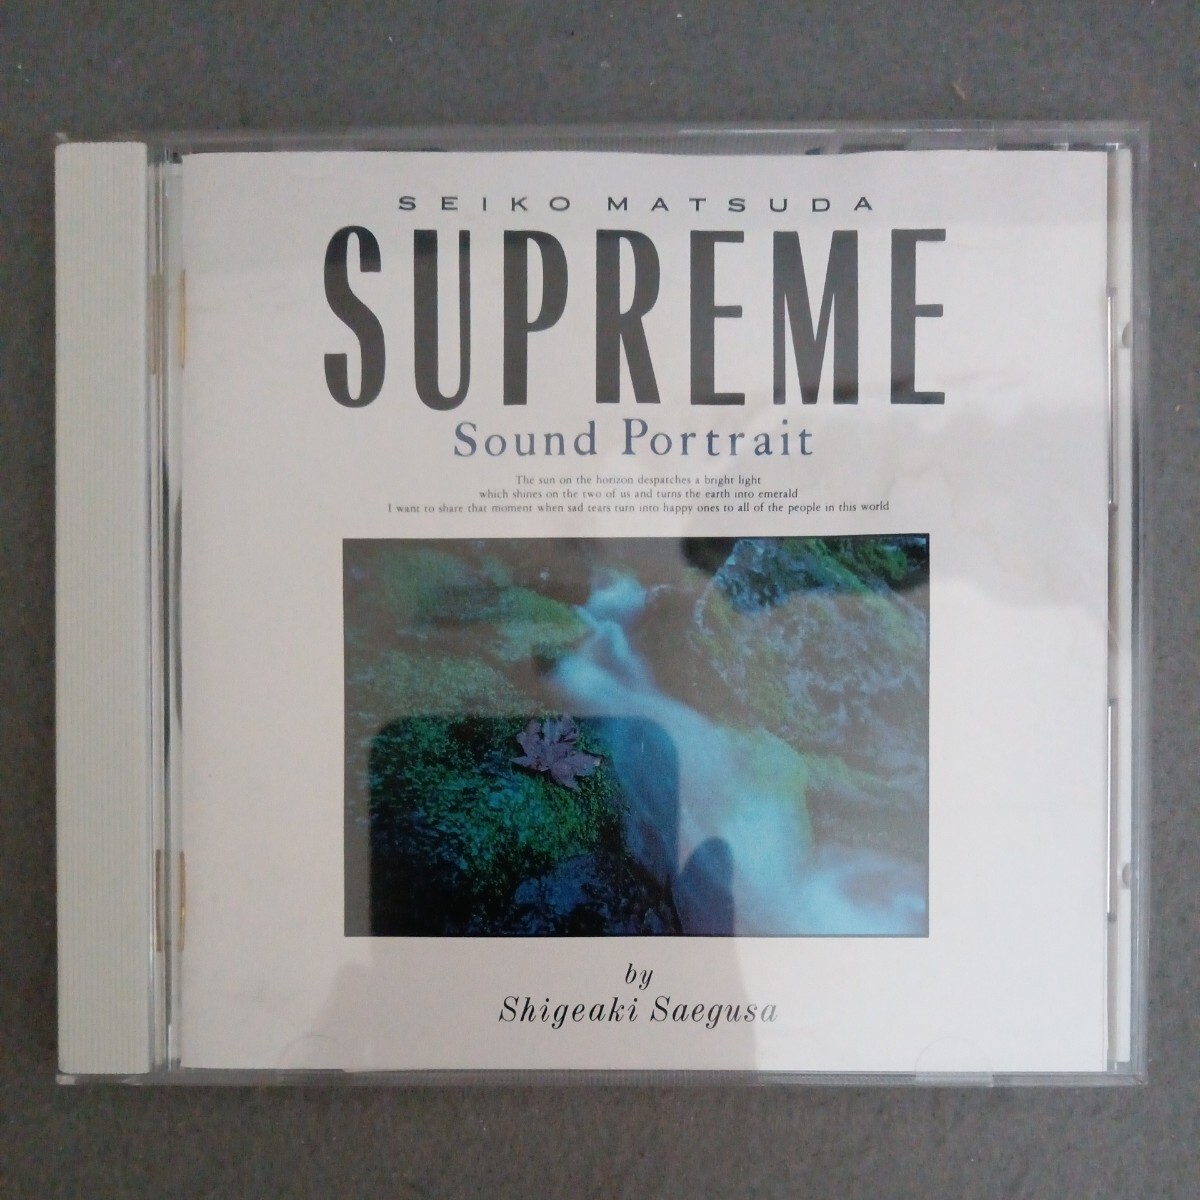 美盤 三枝成彰 松田聖子 Supreme Sound Portrait CD 32DH 518の画像1